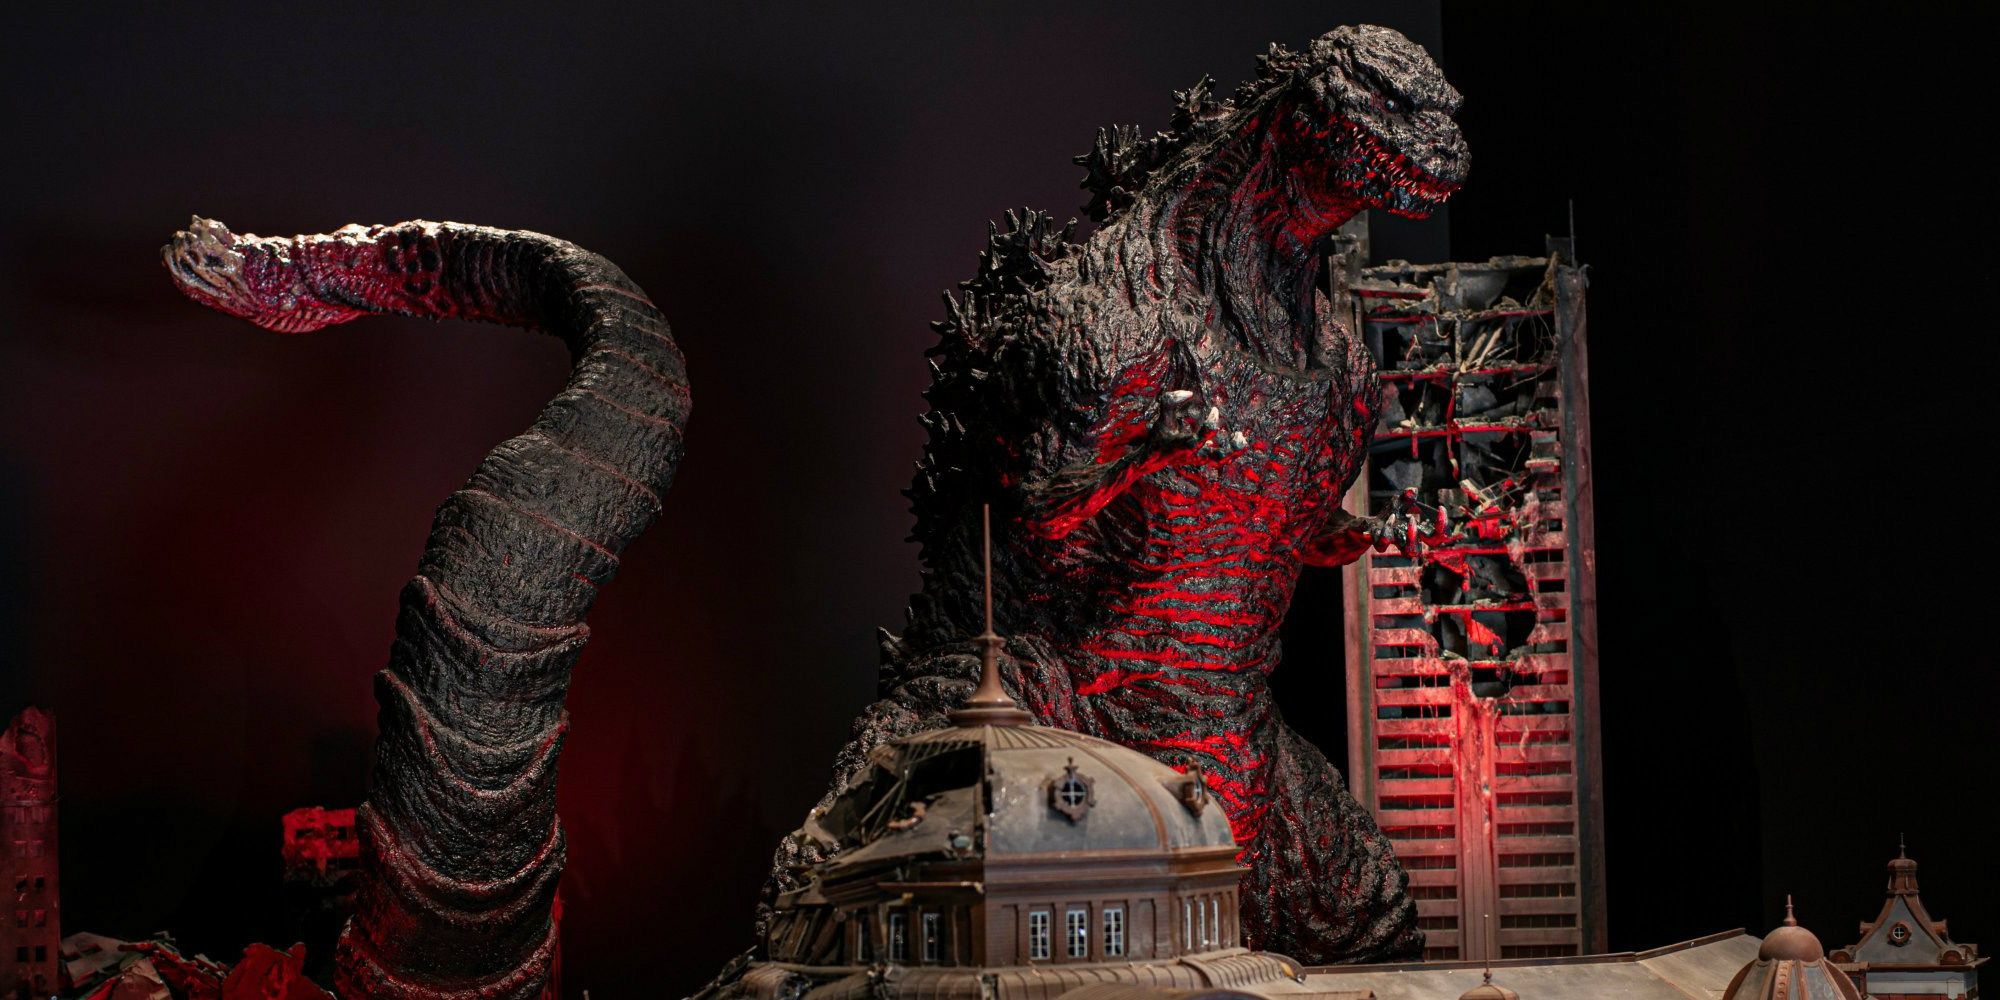 A Shin Godzilla diorama is at the Godzilla museum